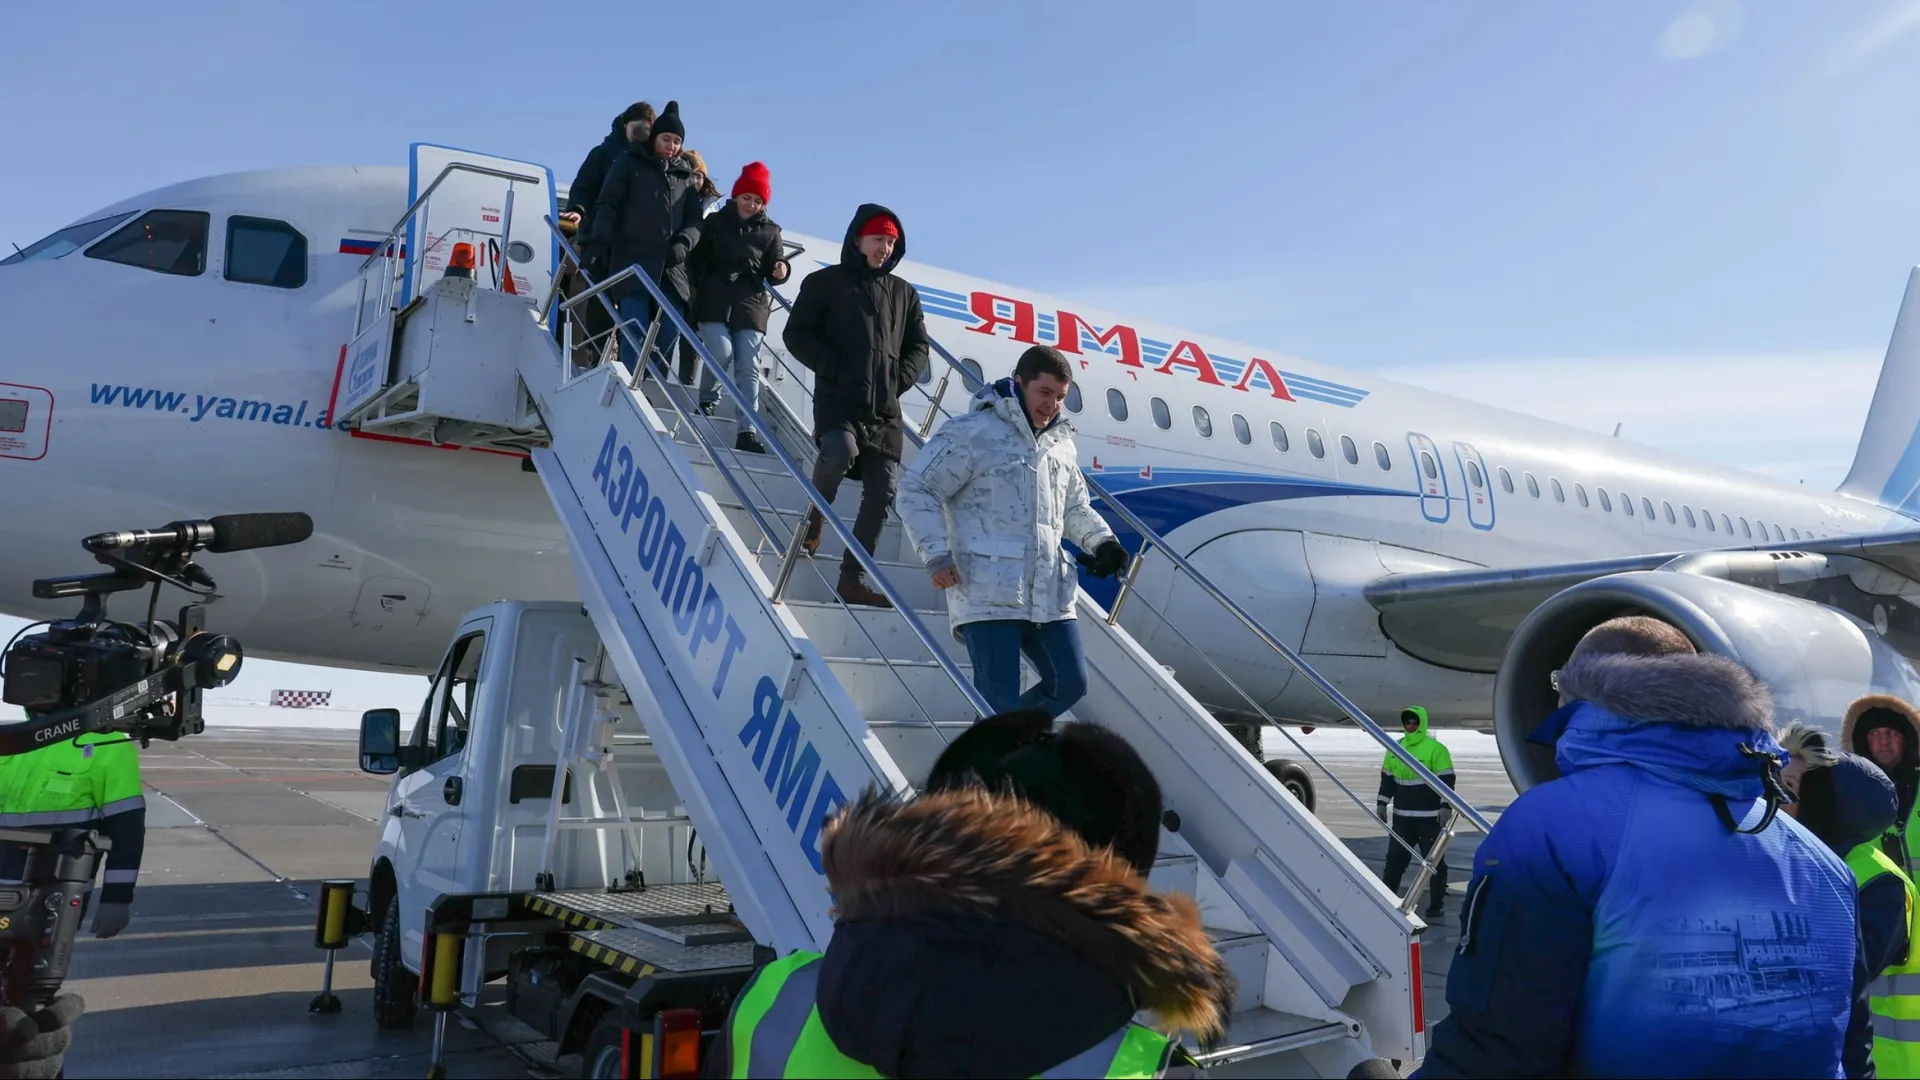 Многодетные семьи ЯНАО активно покупают авиабилеты по льготной программе. Фото: Андрей Ткачев / «Ямал-Медиа»